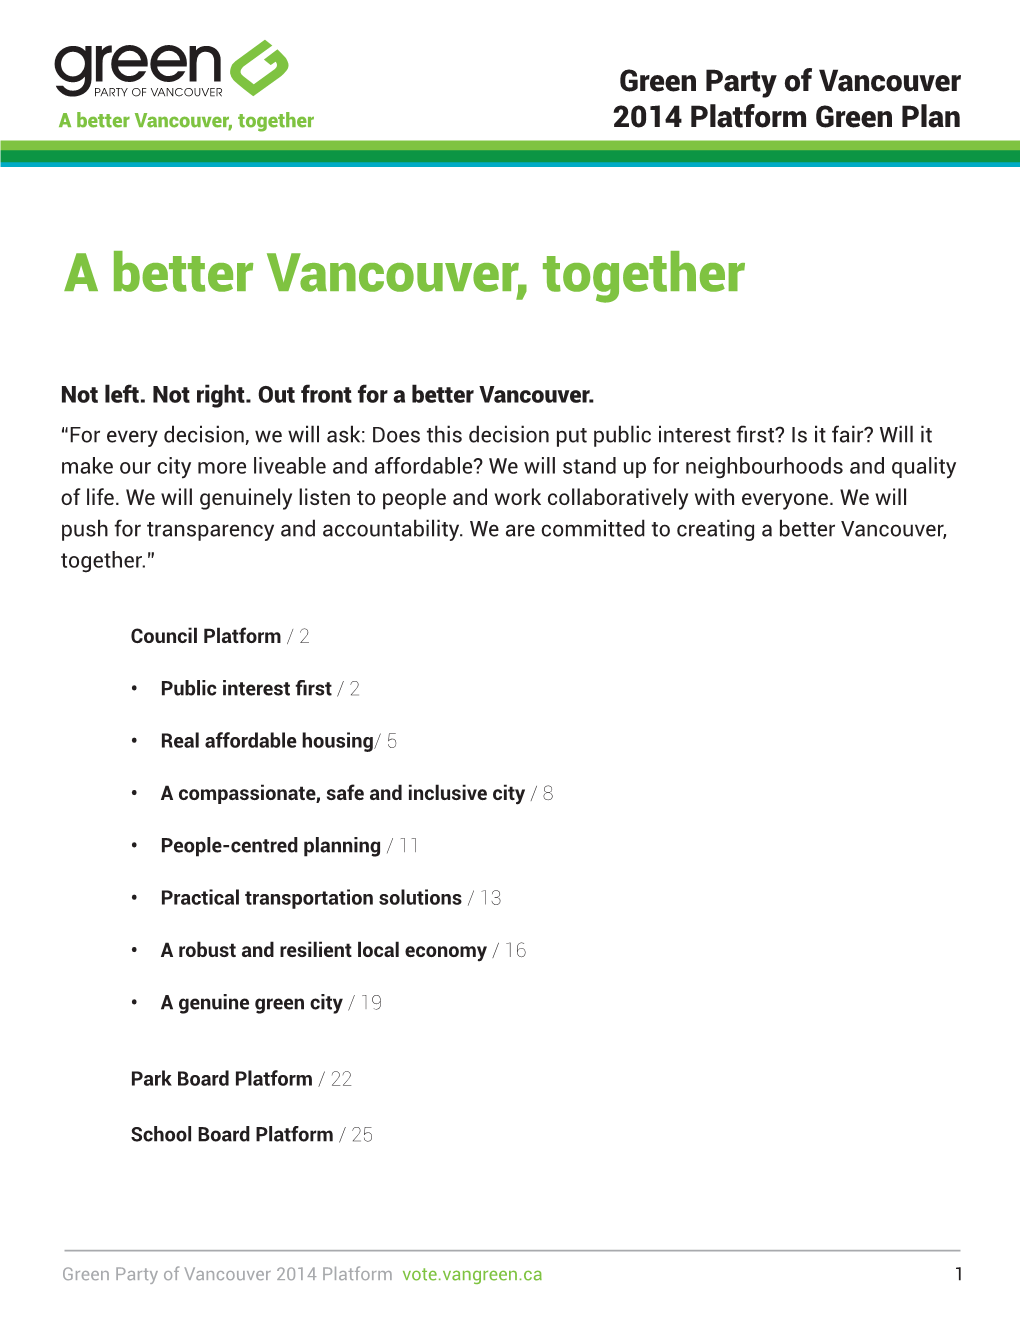 A Better Vancouver, Together 2014 Platform Green Plan